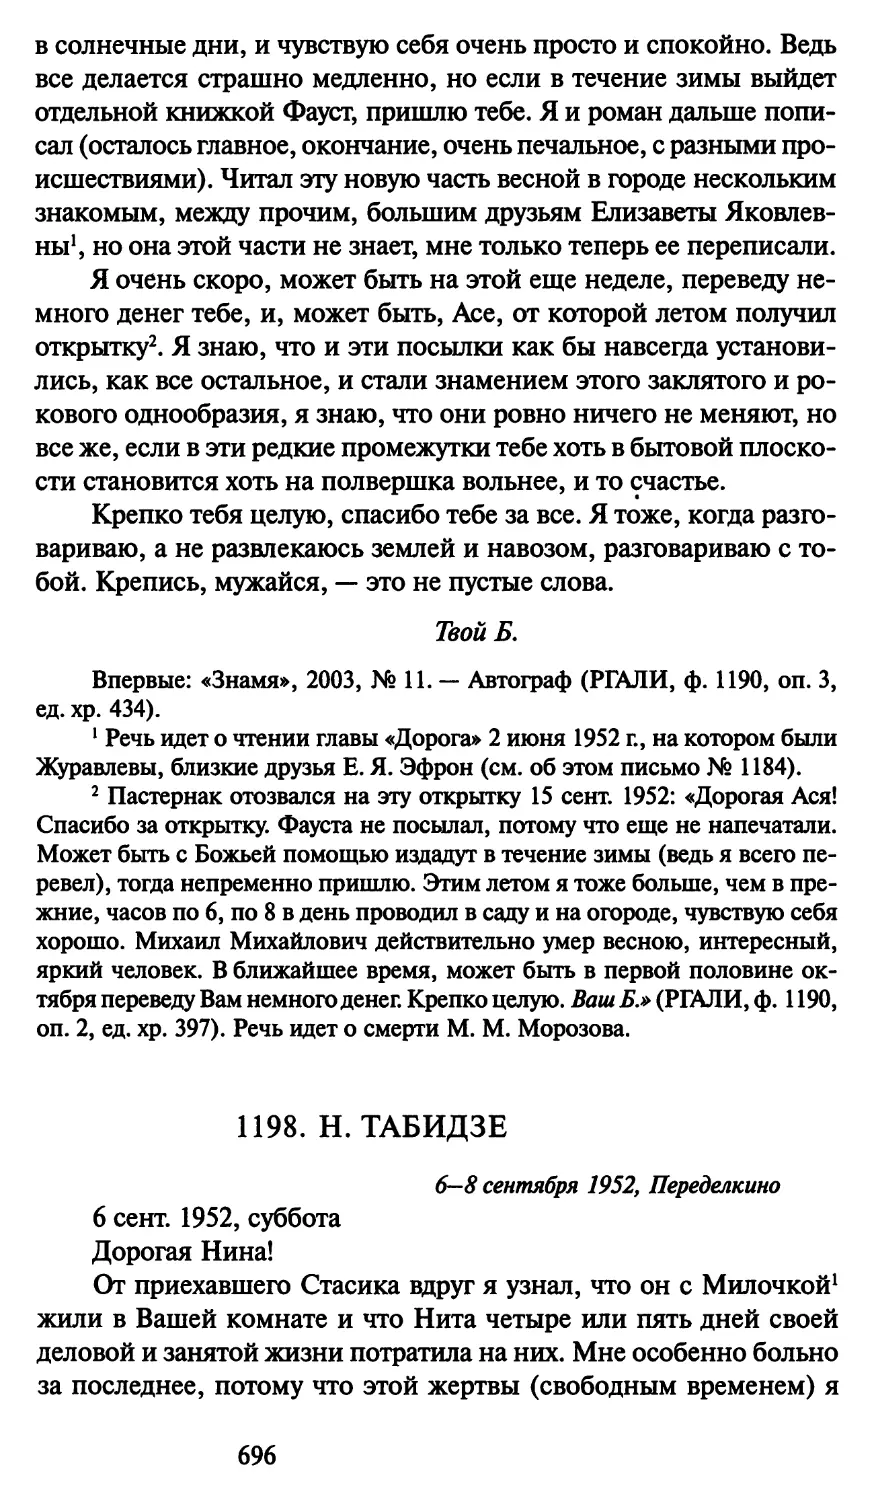 1198. Н. Табидзе 6-8 сентября 1952